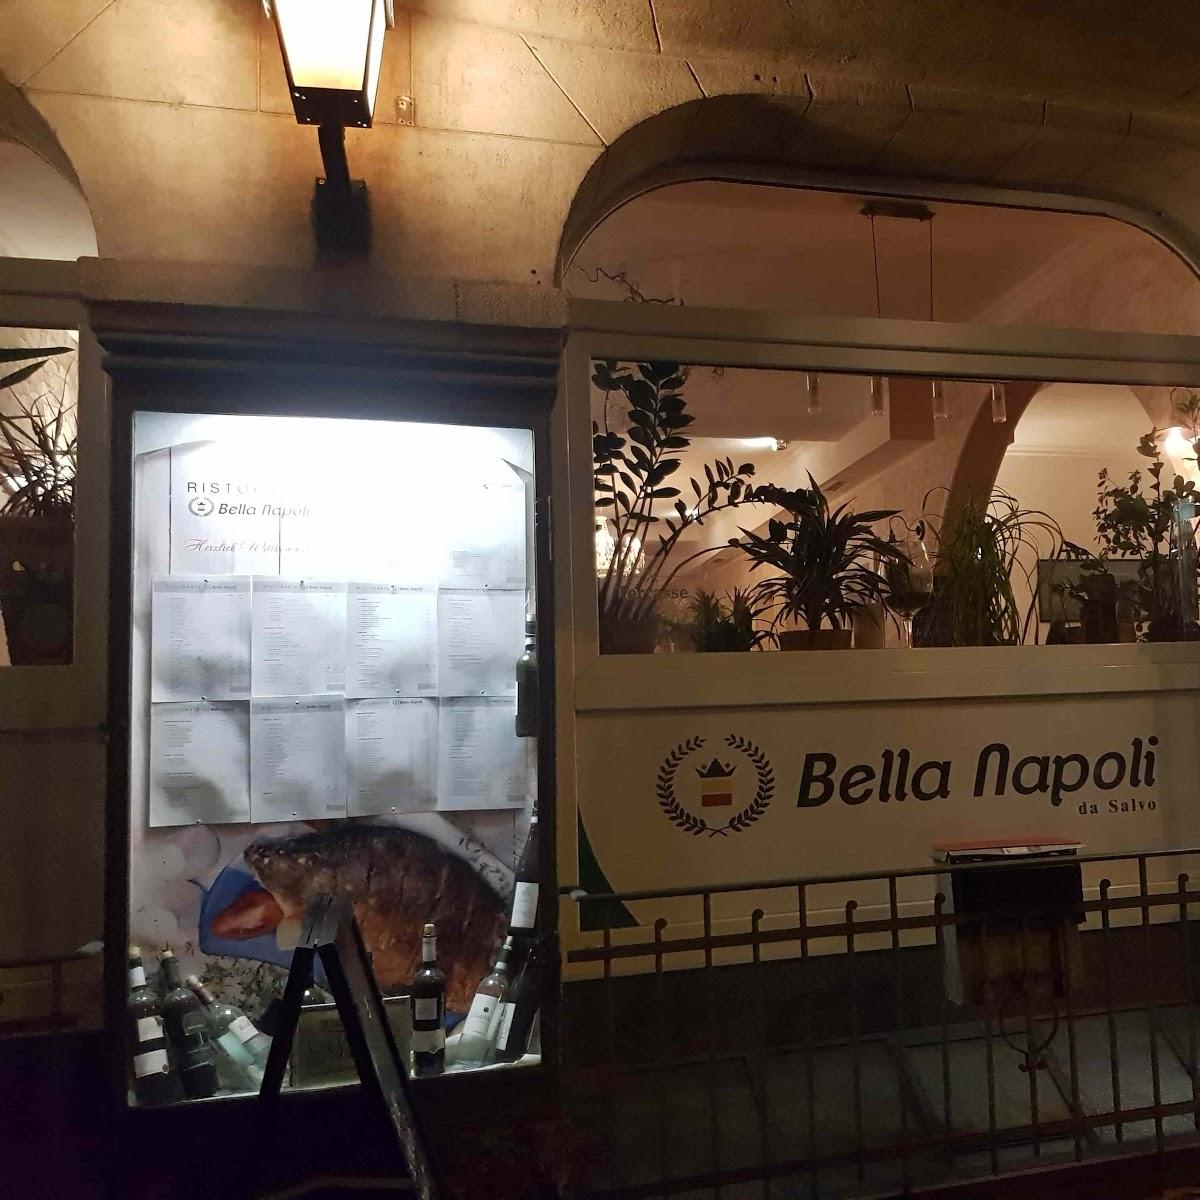 Restaurant "Bella Napoli" in Ulm